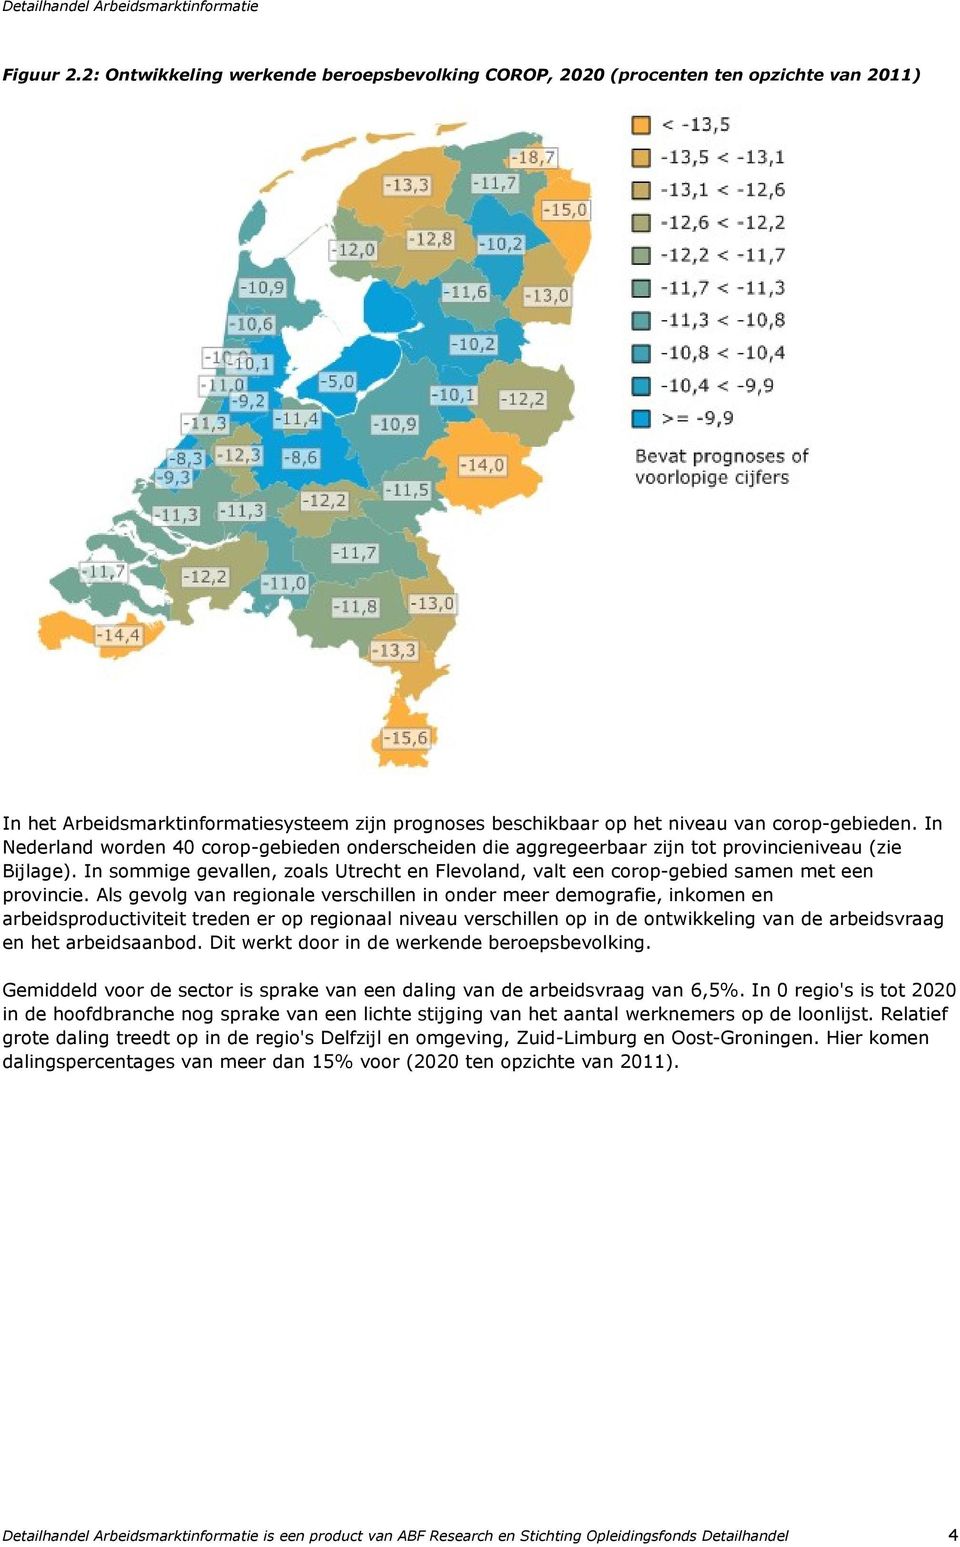 In sommige gevallen, zoals Utrecht en Flevoland, valt een corop-gebied samen met een provincie.